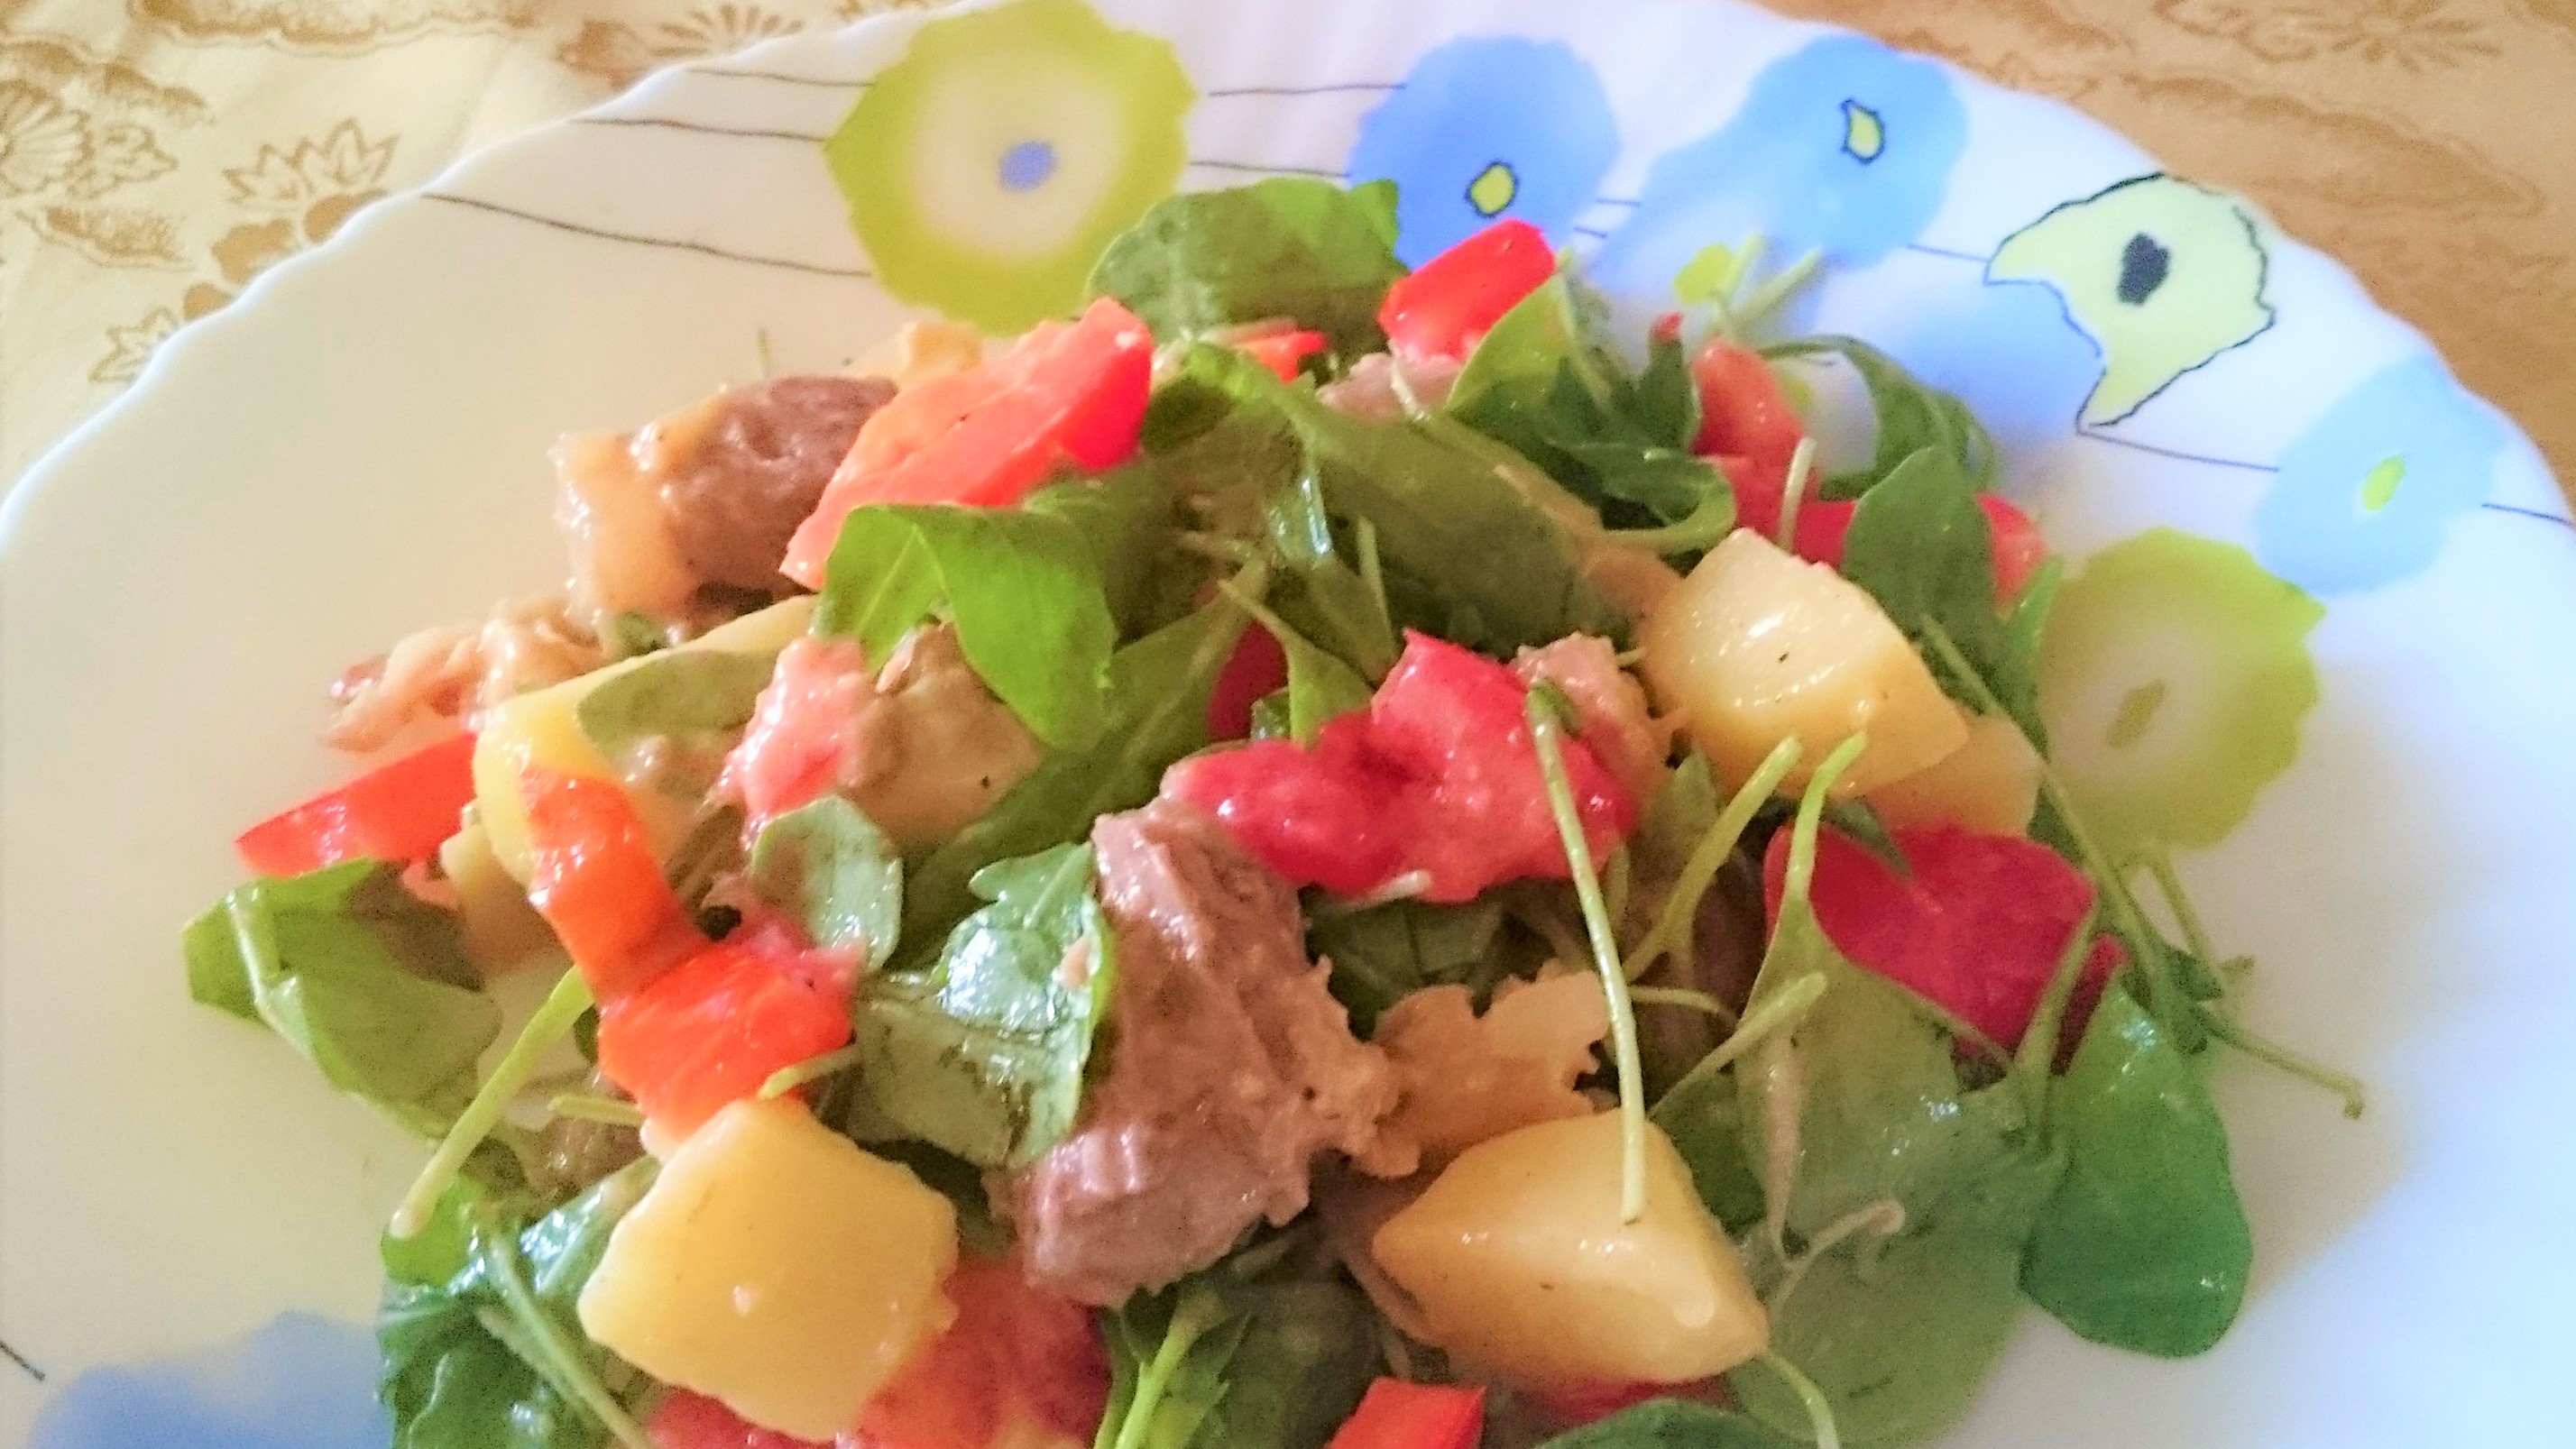 Salata picanta cu carne de vita